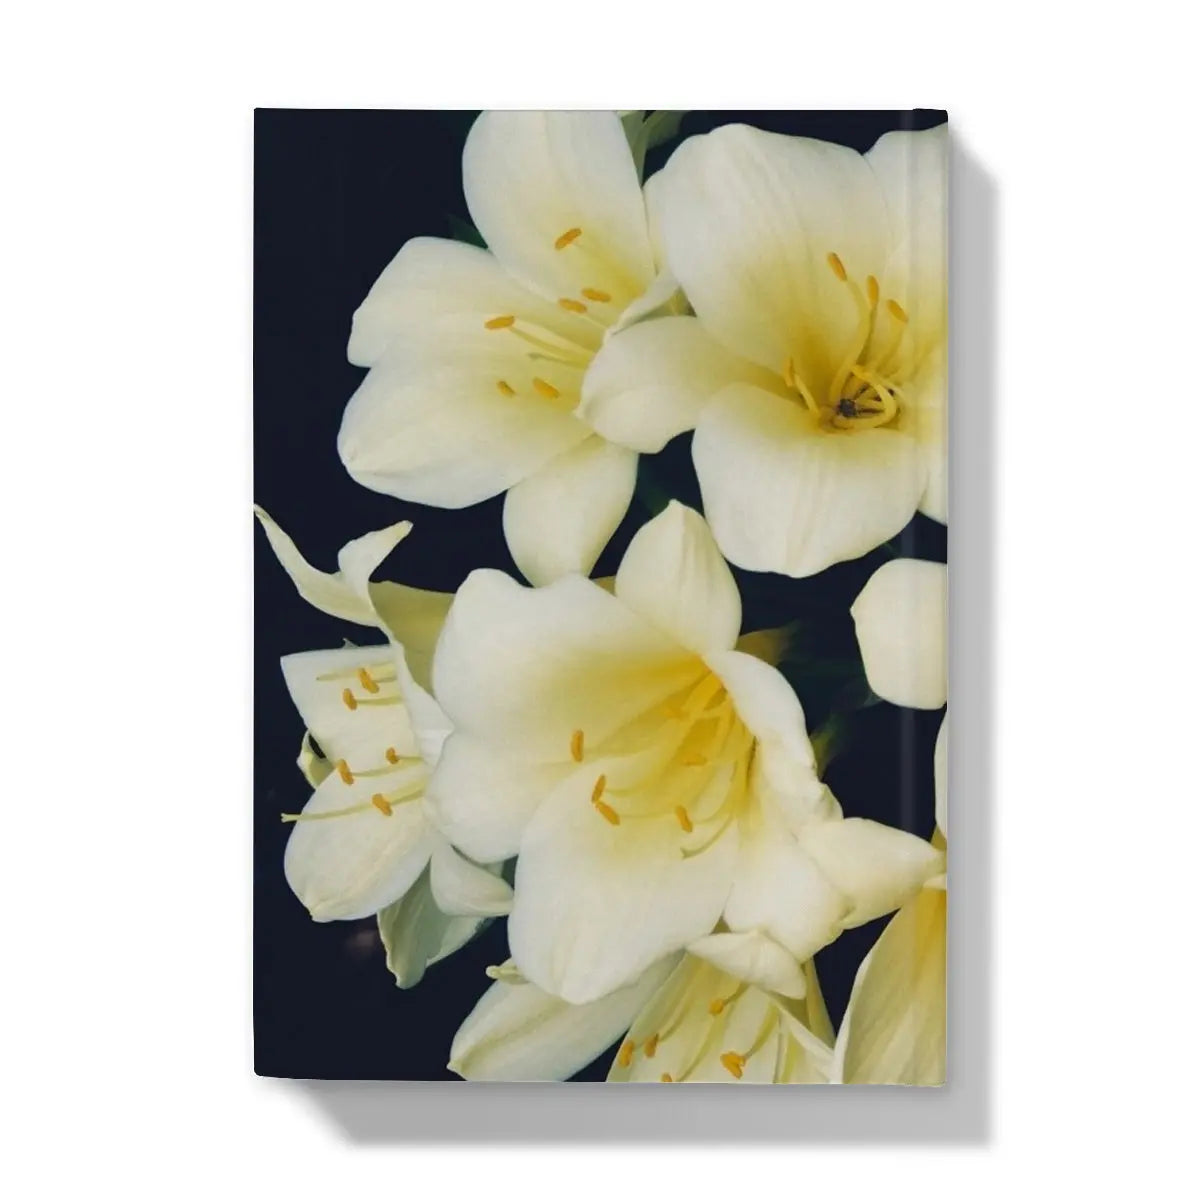 Flower Power Too Hardback Journal - Notebooks & Notepads - Aesthetic Art